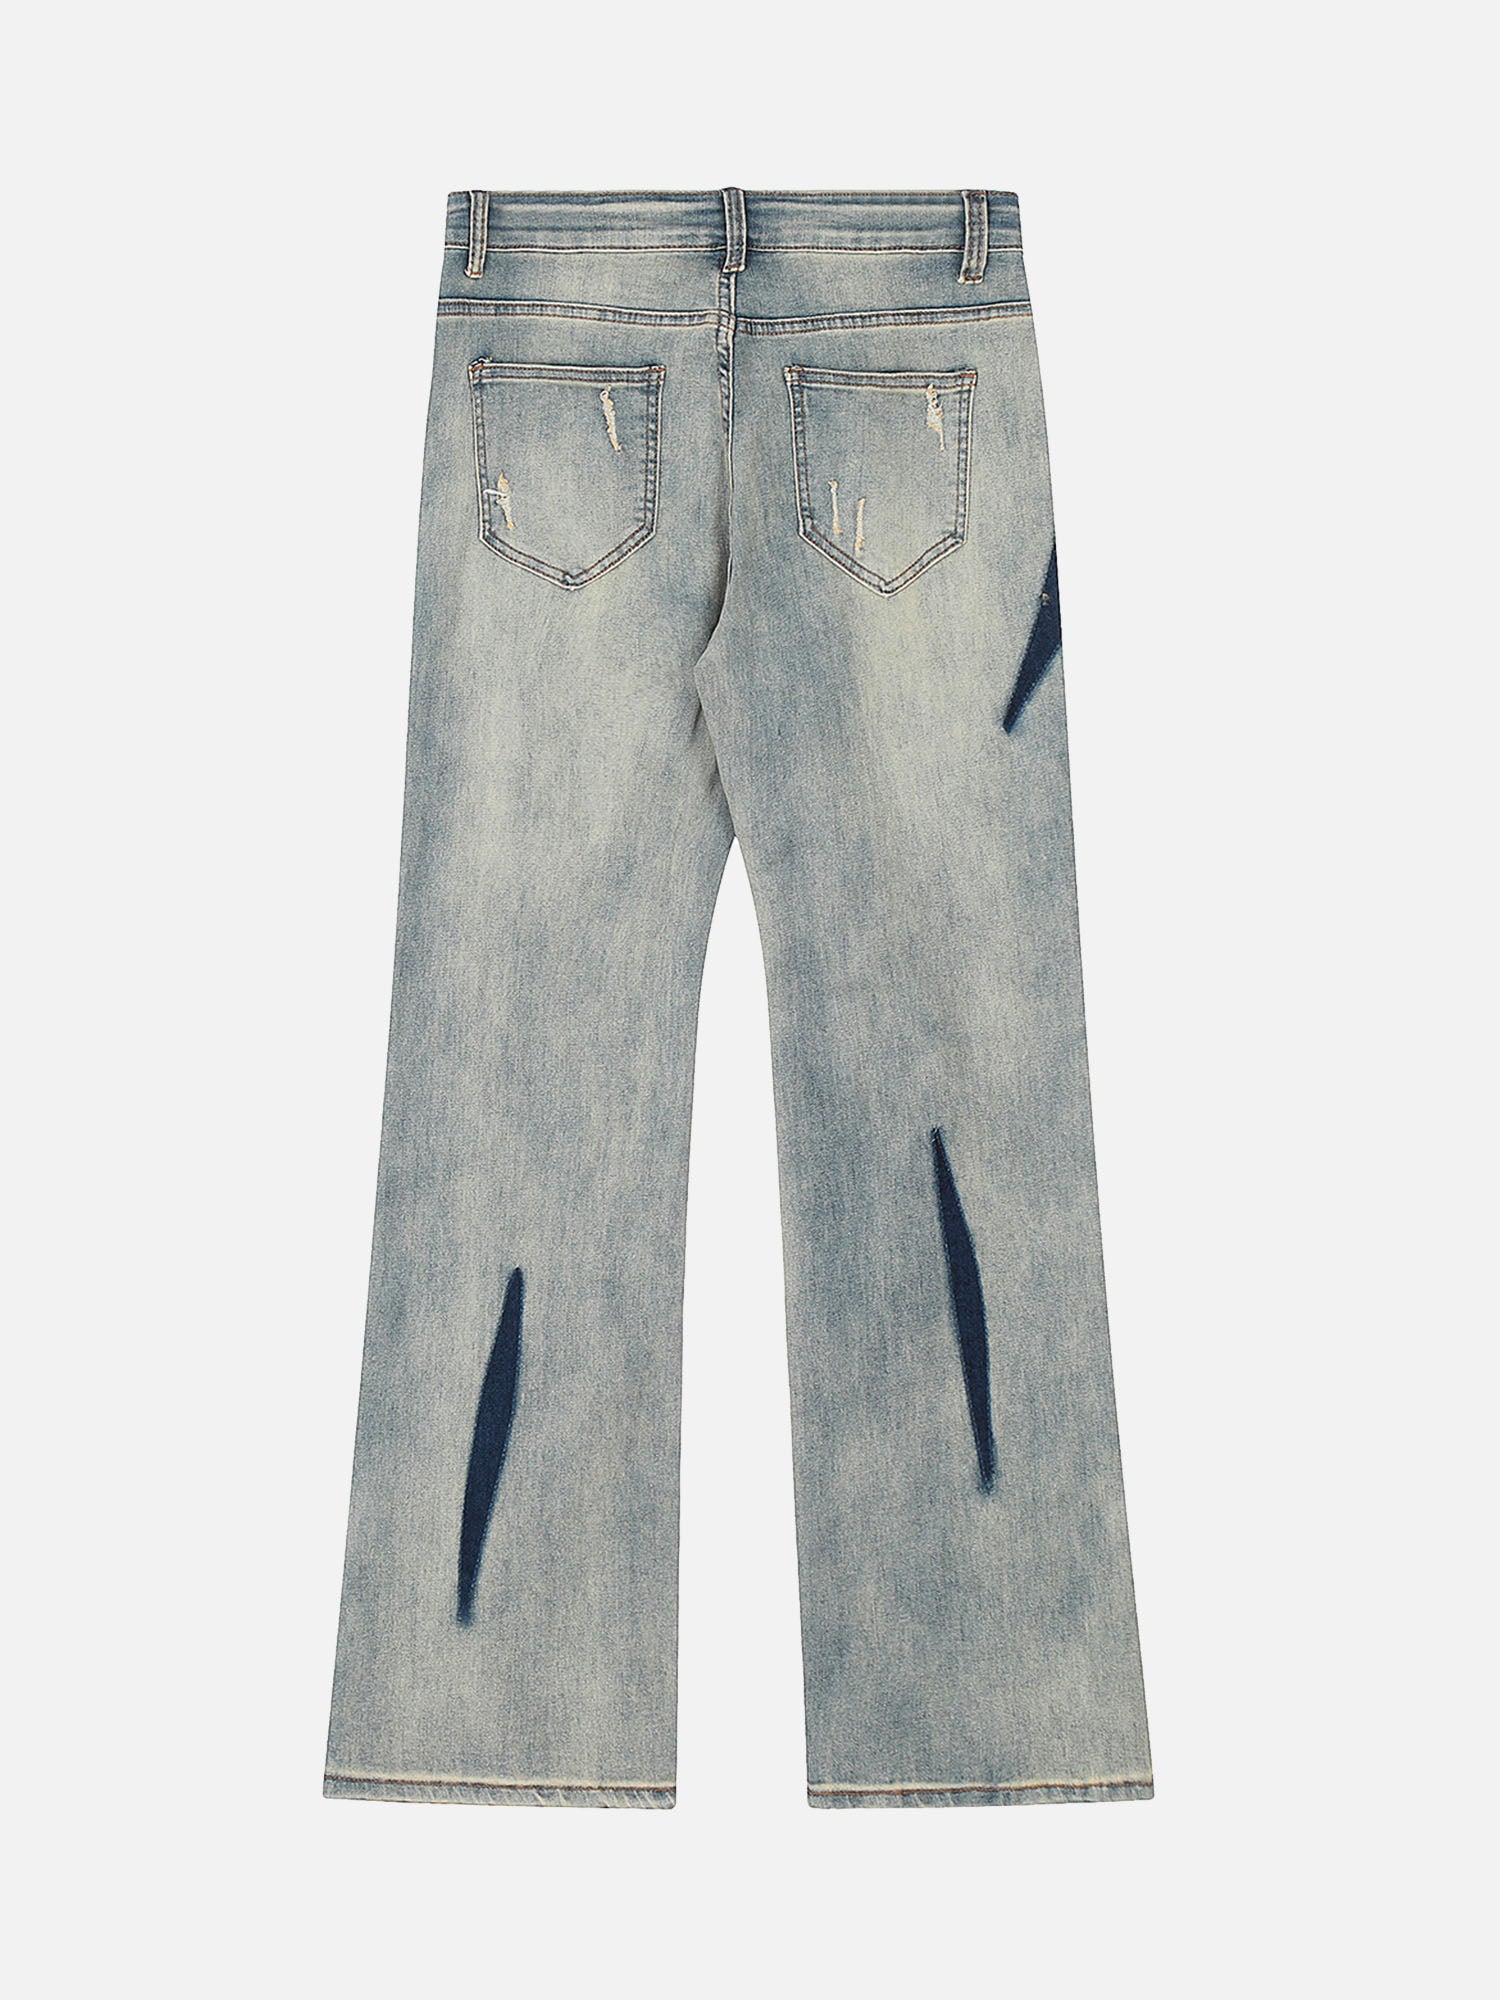 Thesupermade Vintage Washed Split Structure Hip-Hop Jeans